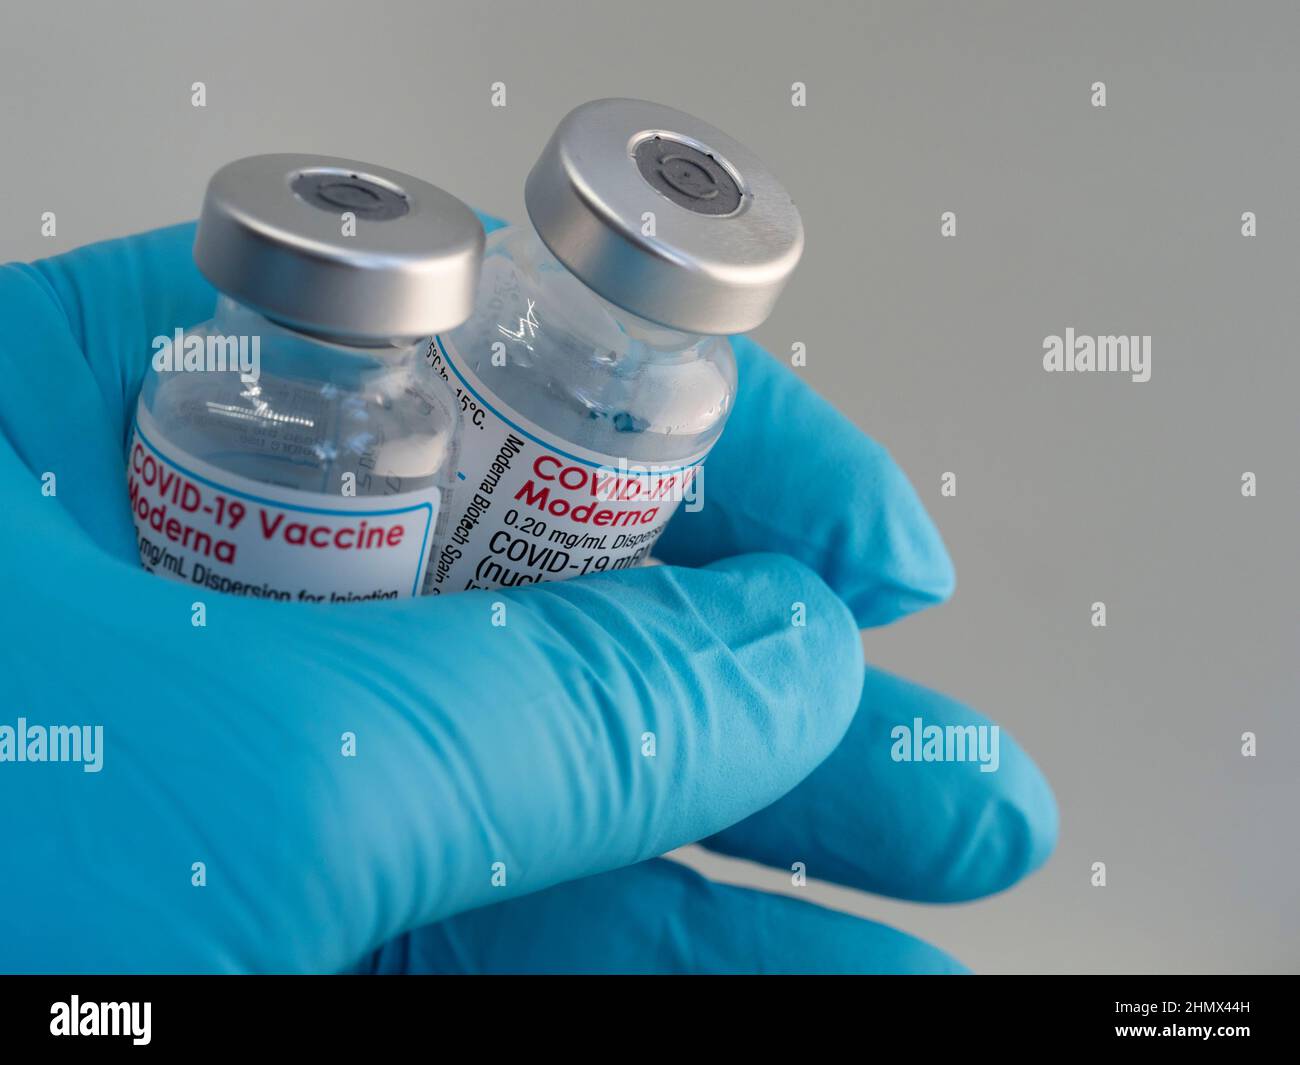 Primo piano un flaconcino con il vaccino Moderna Covid-19, tenuto da una mano in guanti medici Foto Stock